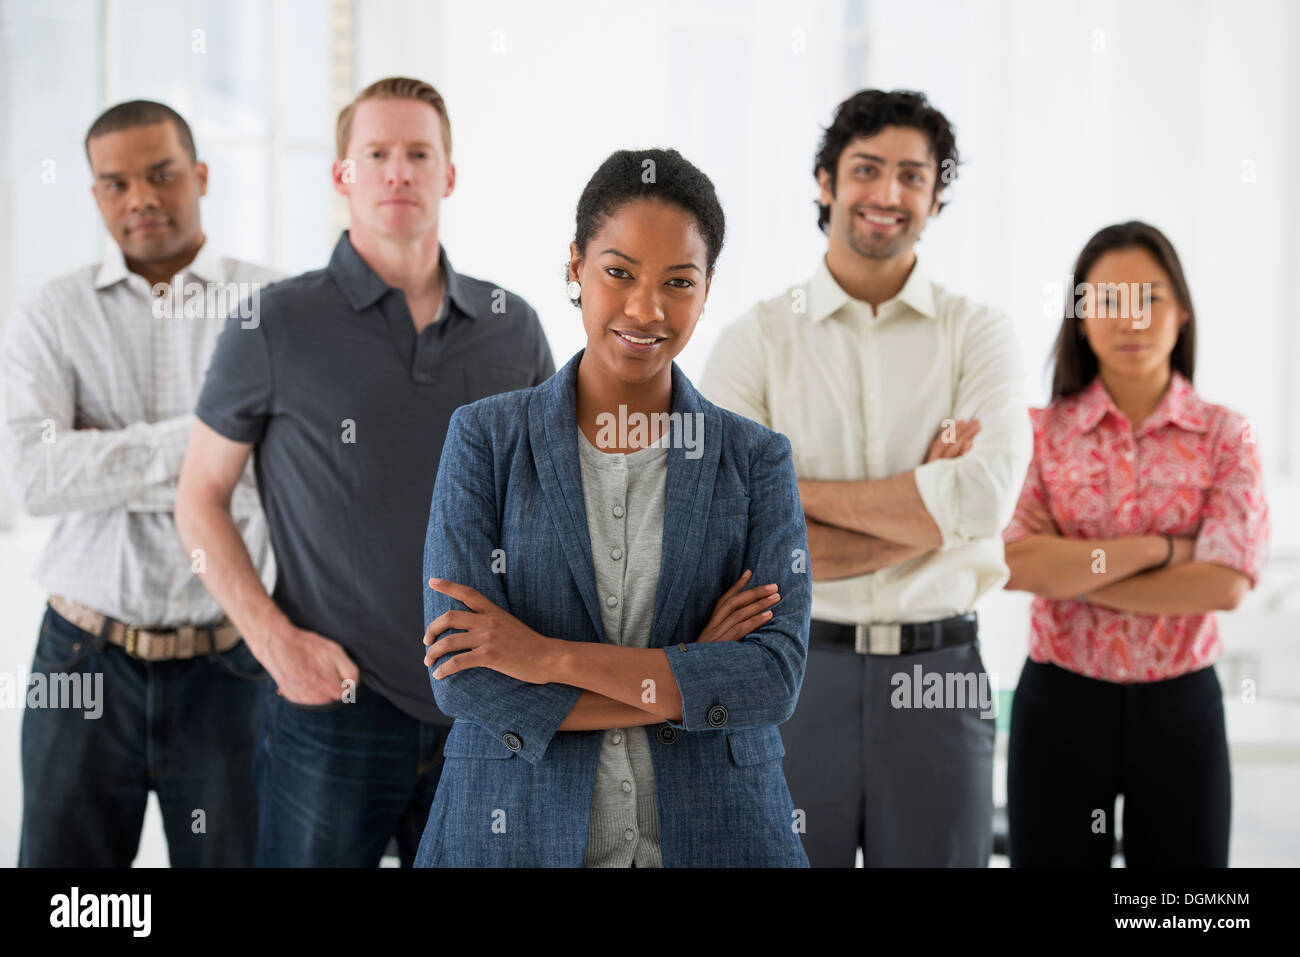 Los negocios. Un equipo de personas, un grupo multiétnico, hombres y mujeres de un grupo. Foto de stock